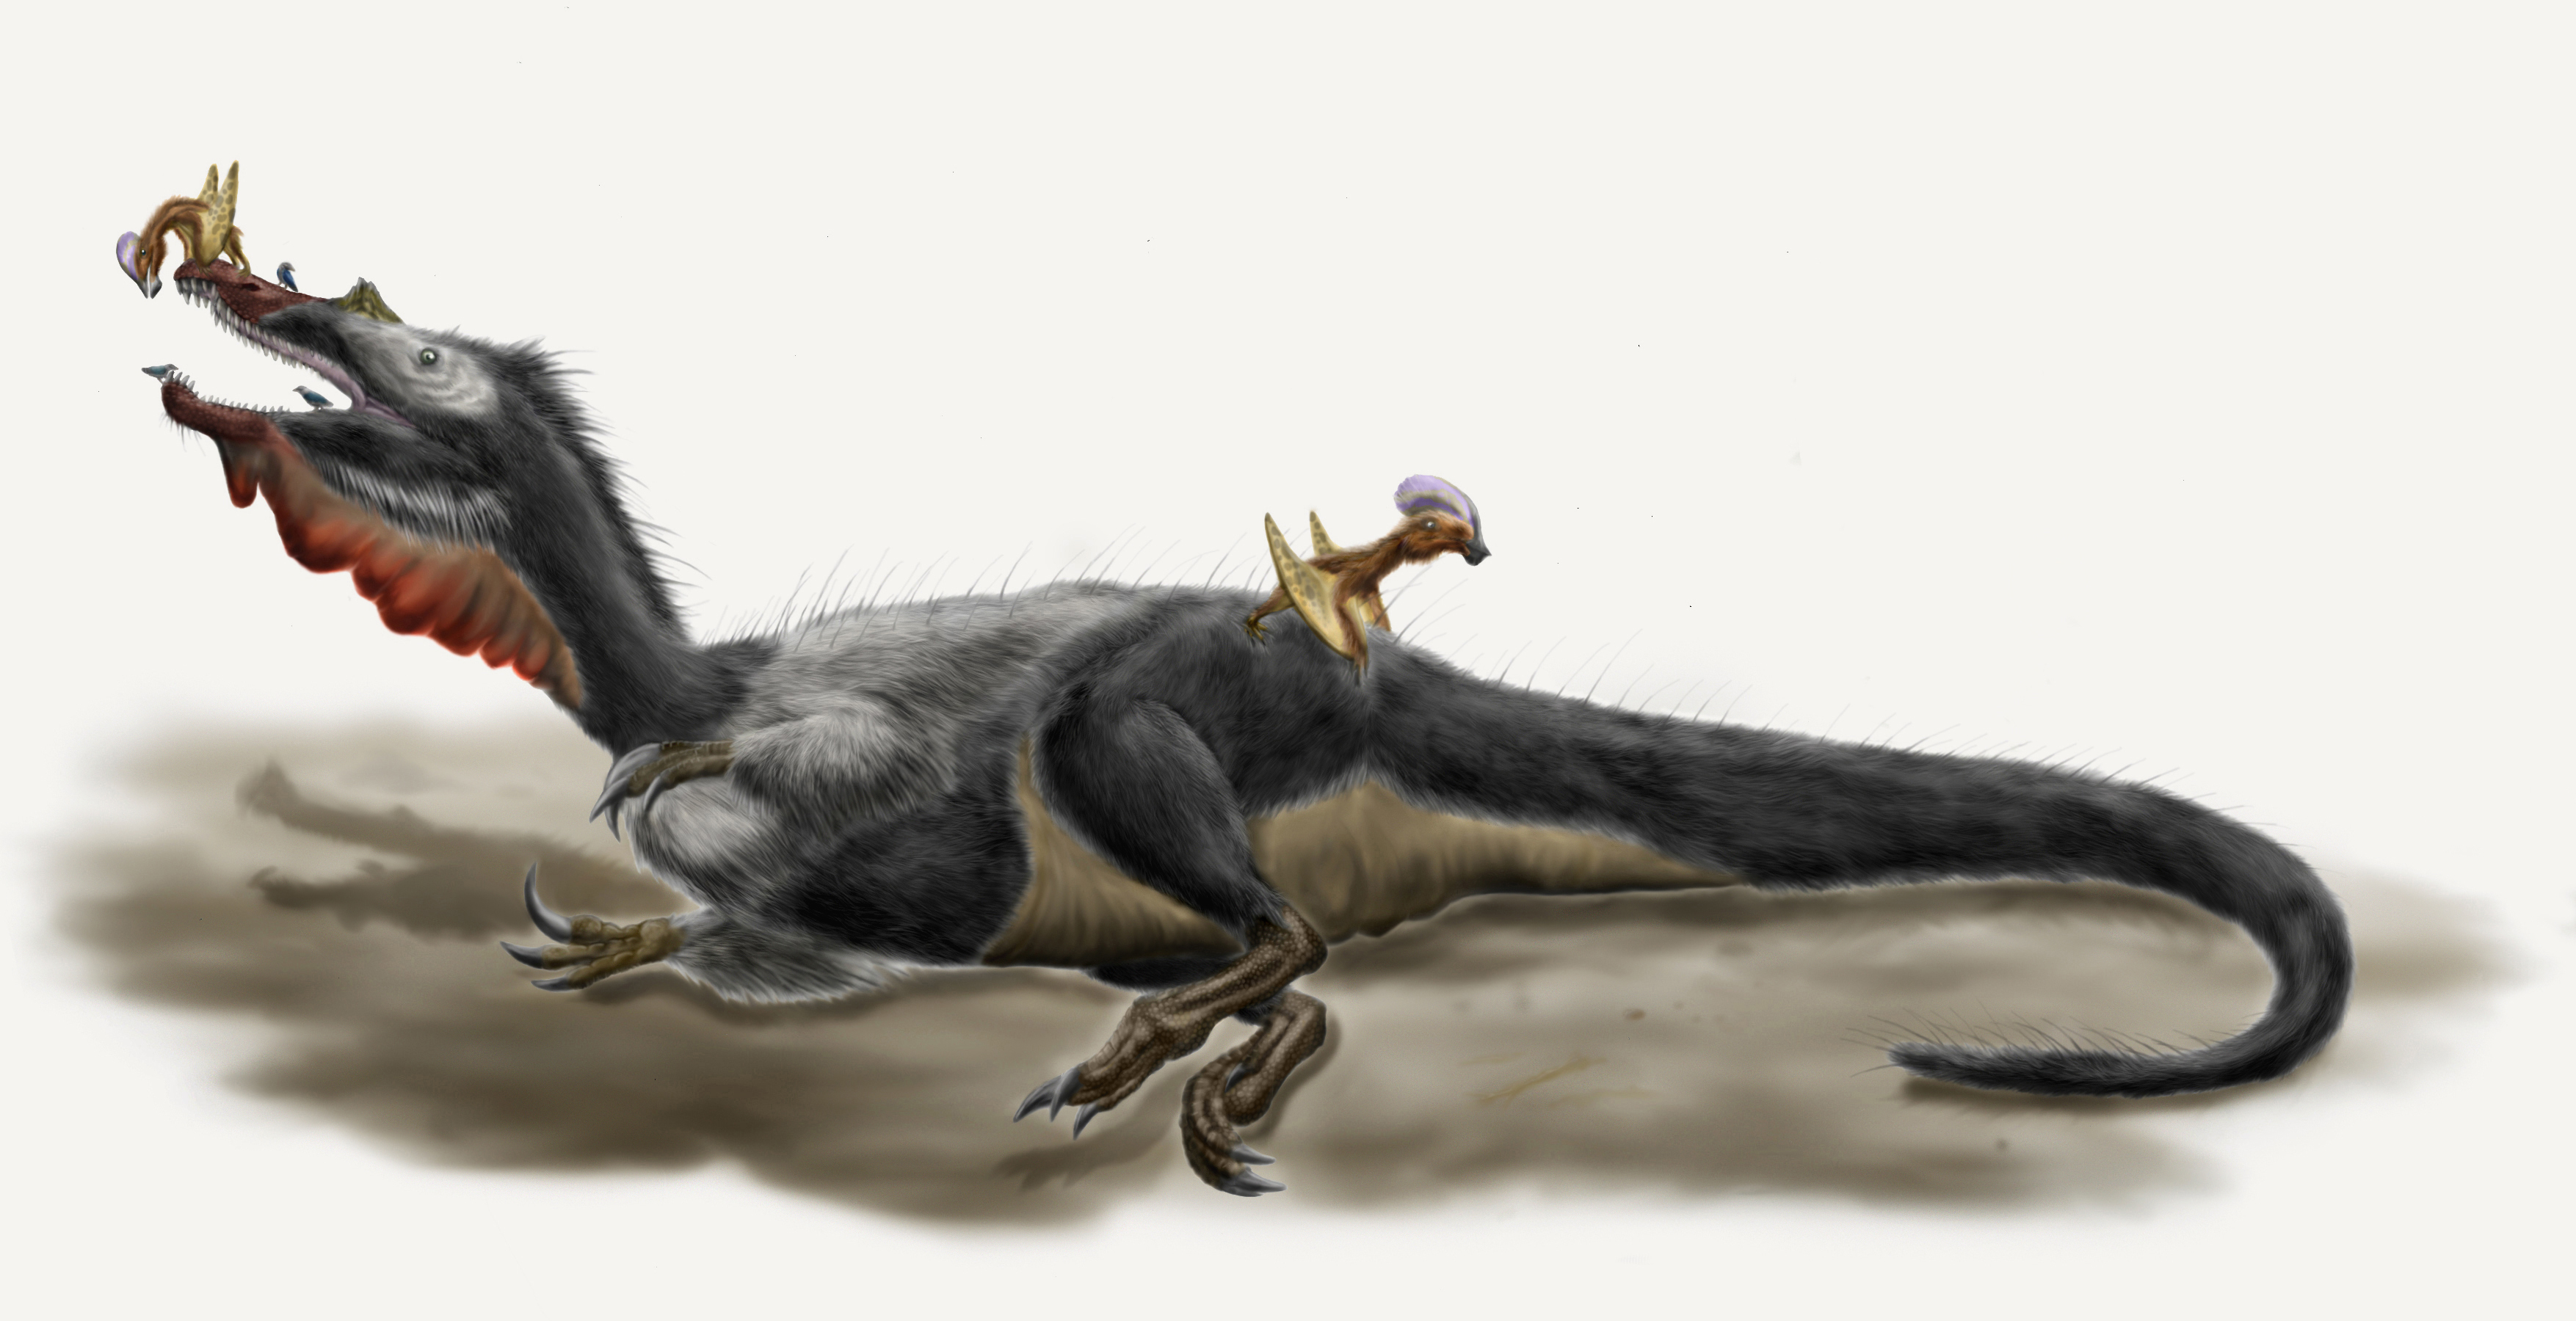 Moderní rekonstrukce druhu Baryonyx walkeri, evropského zástupce čeledi spinosauridů. Přítomnost pernatého pokryvu těla je u tohoto druhu vysoce hypotetická. Tento až 10 metrů dlouhý predátor obýval oblasti dnešní Velké Británie a možná i Portugalska